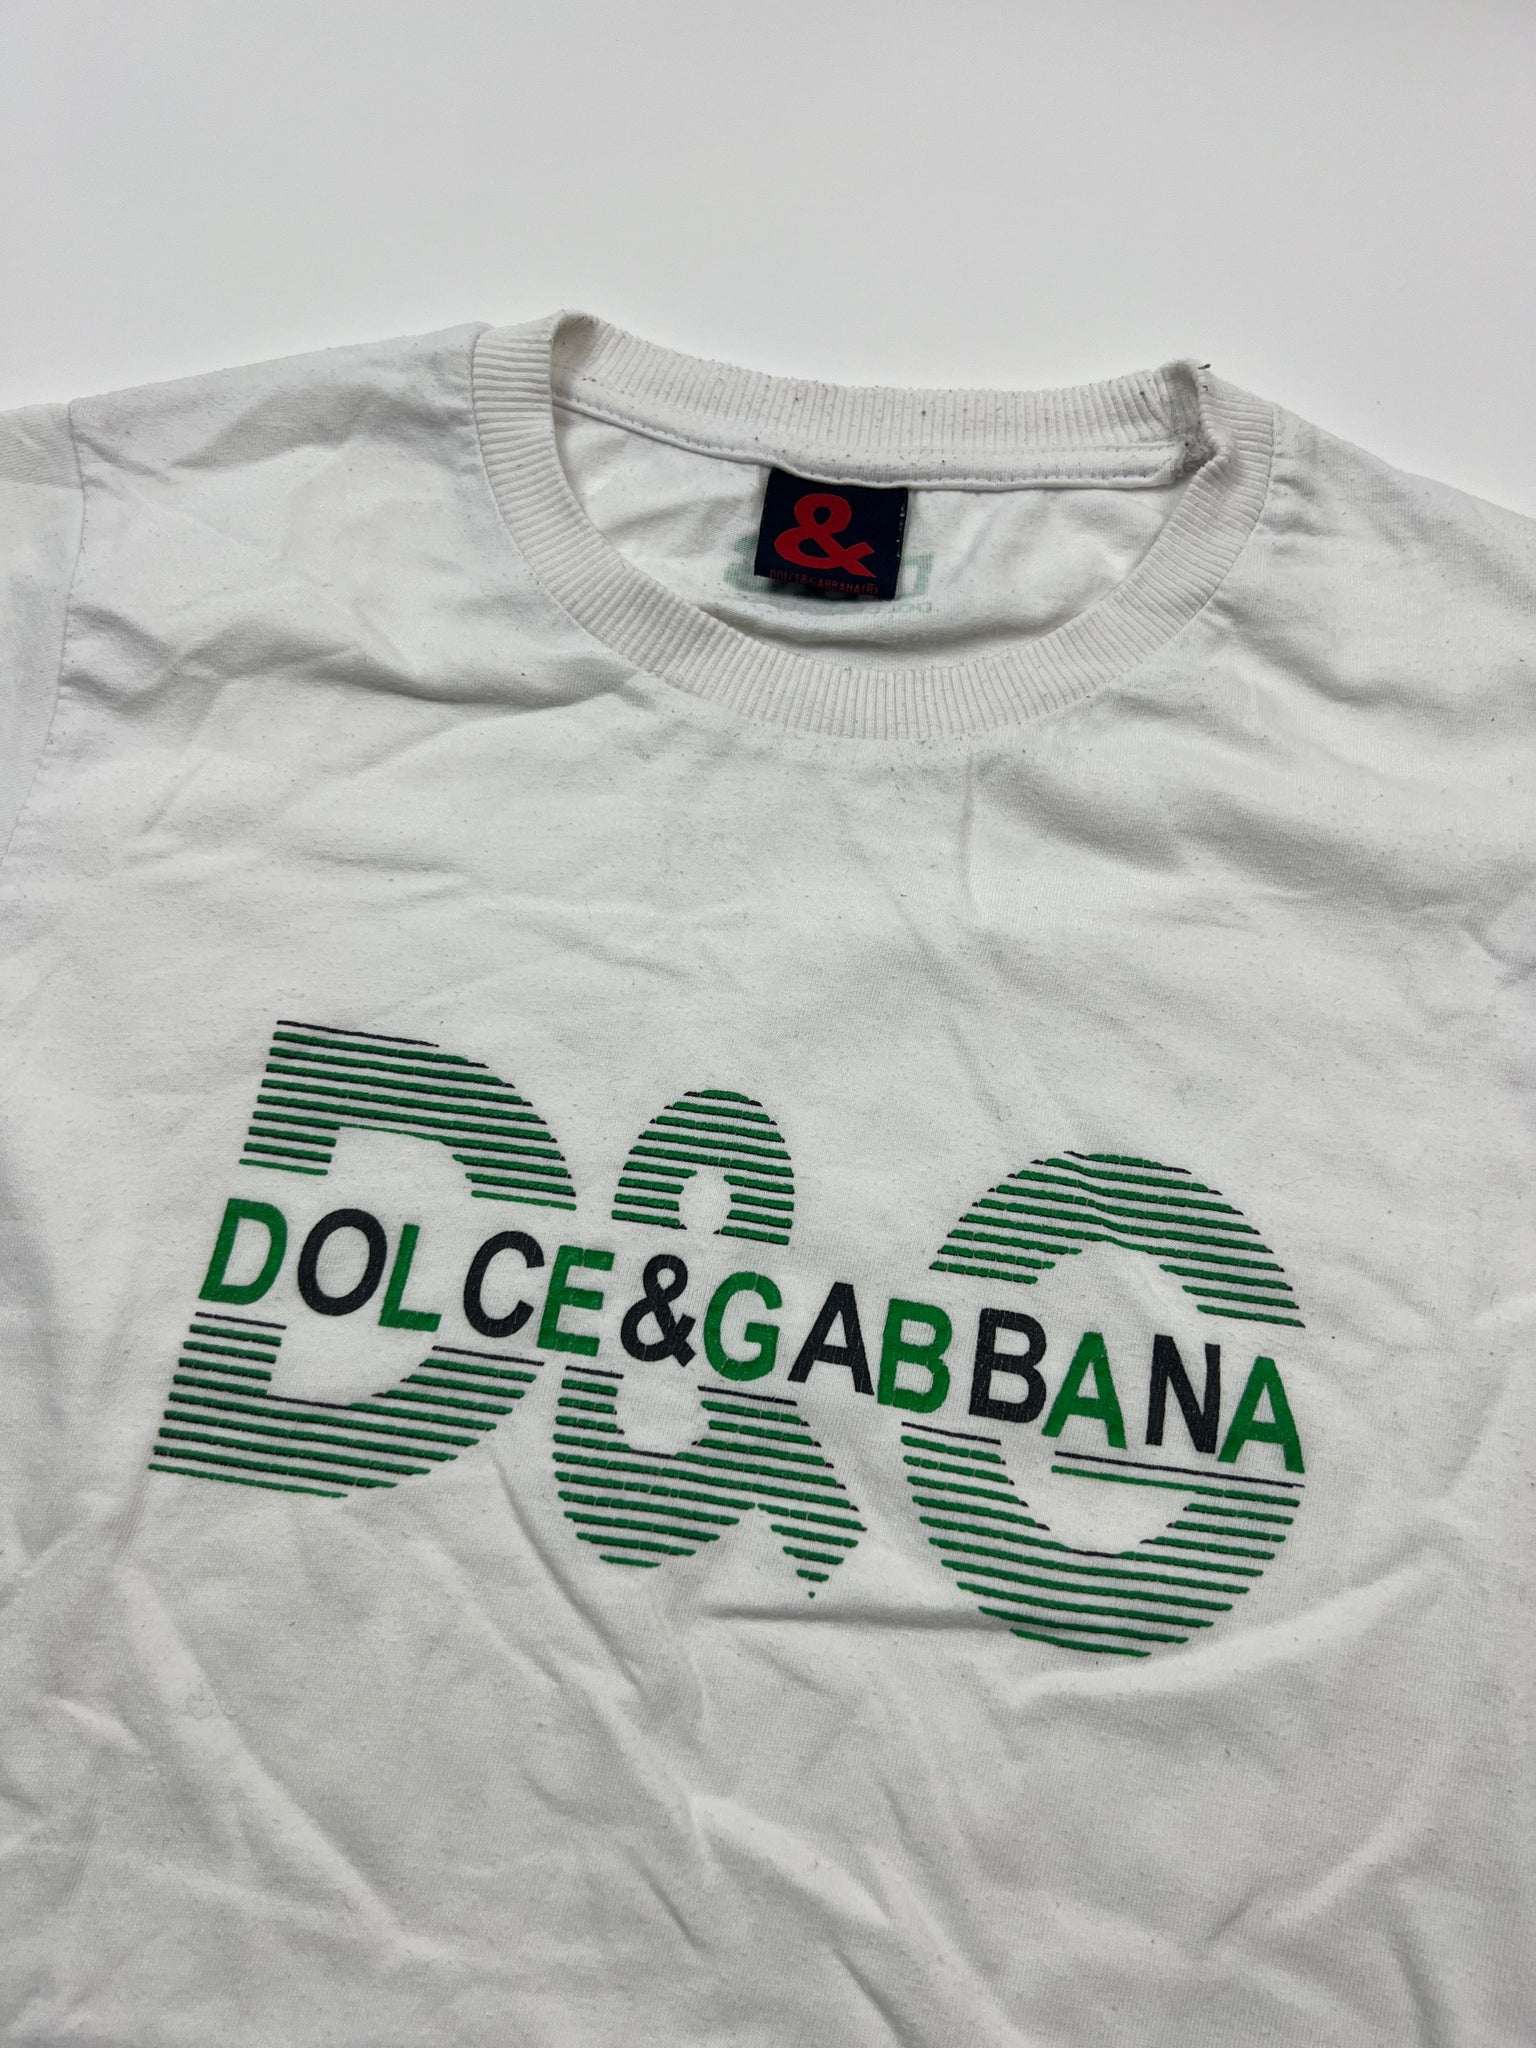 Dolce & Gabbana T-Shirt (S)